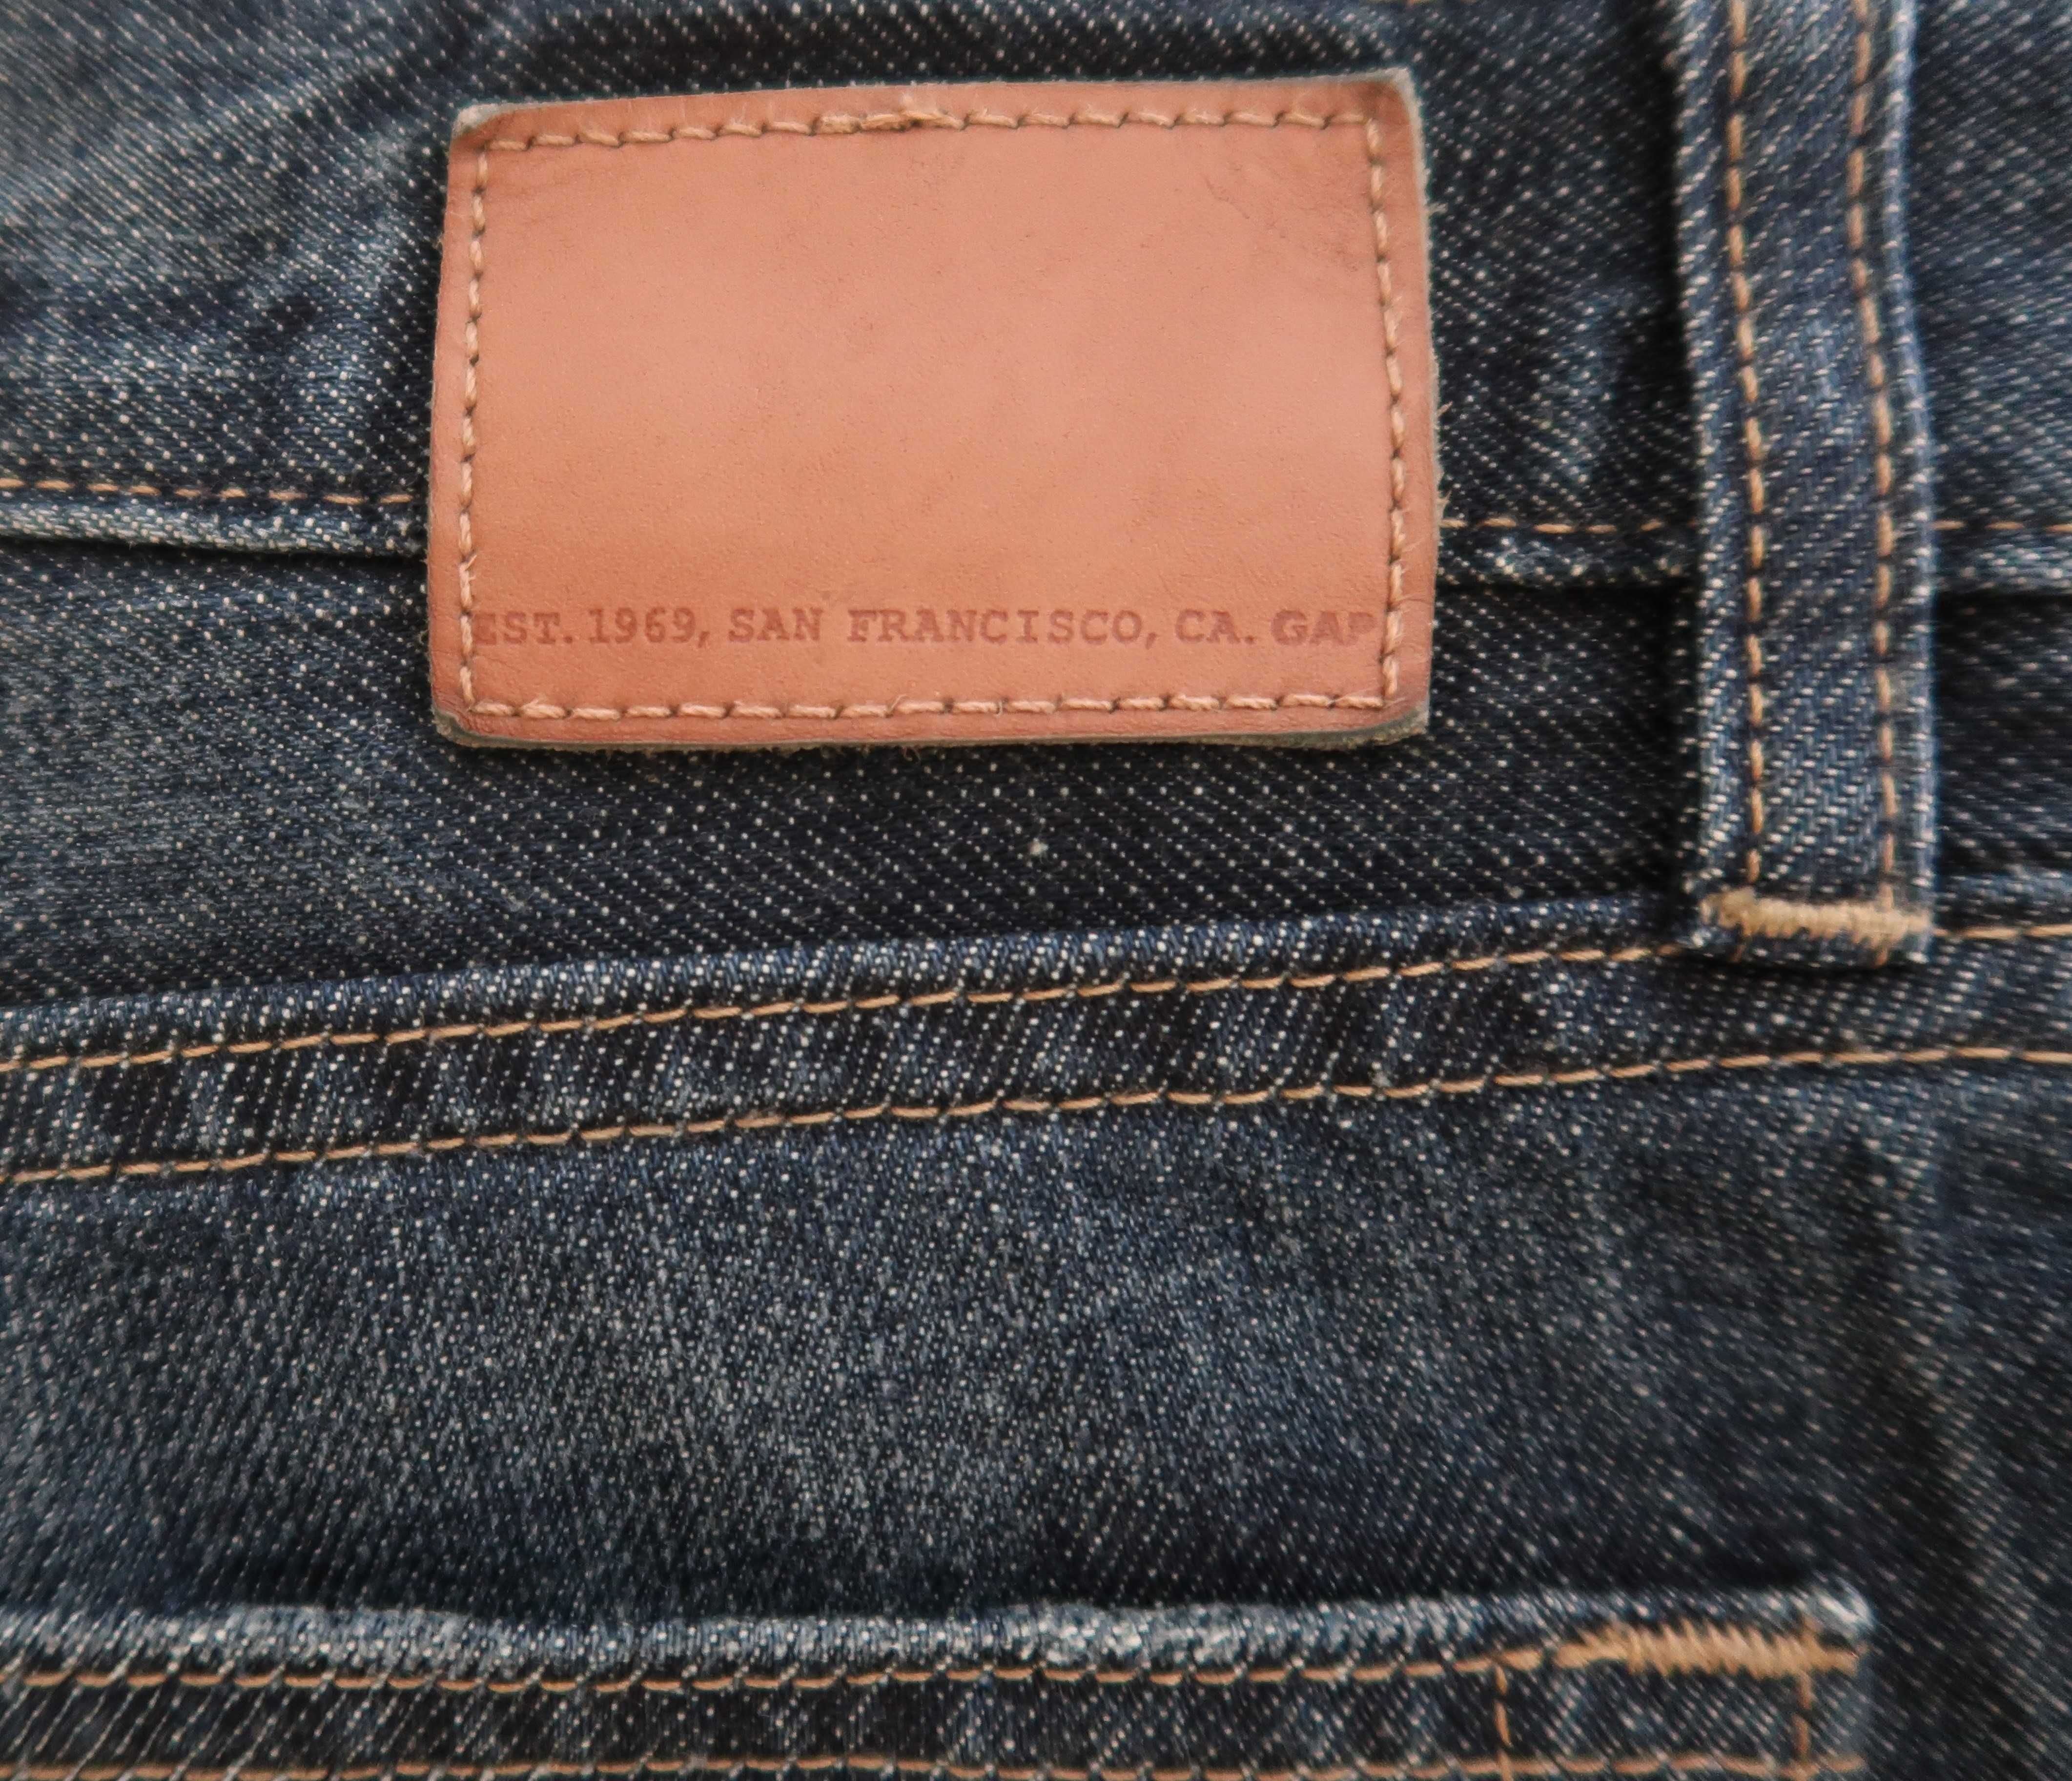 GAP granatowe spodnie męskie jeans 100% bawełna Rozmiar XL